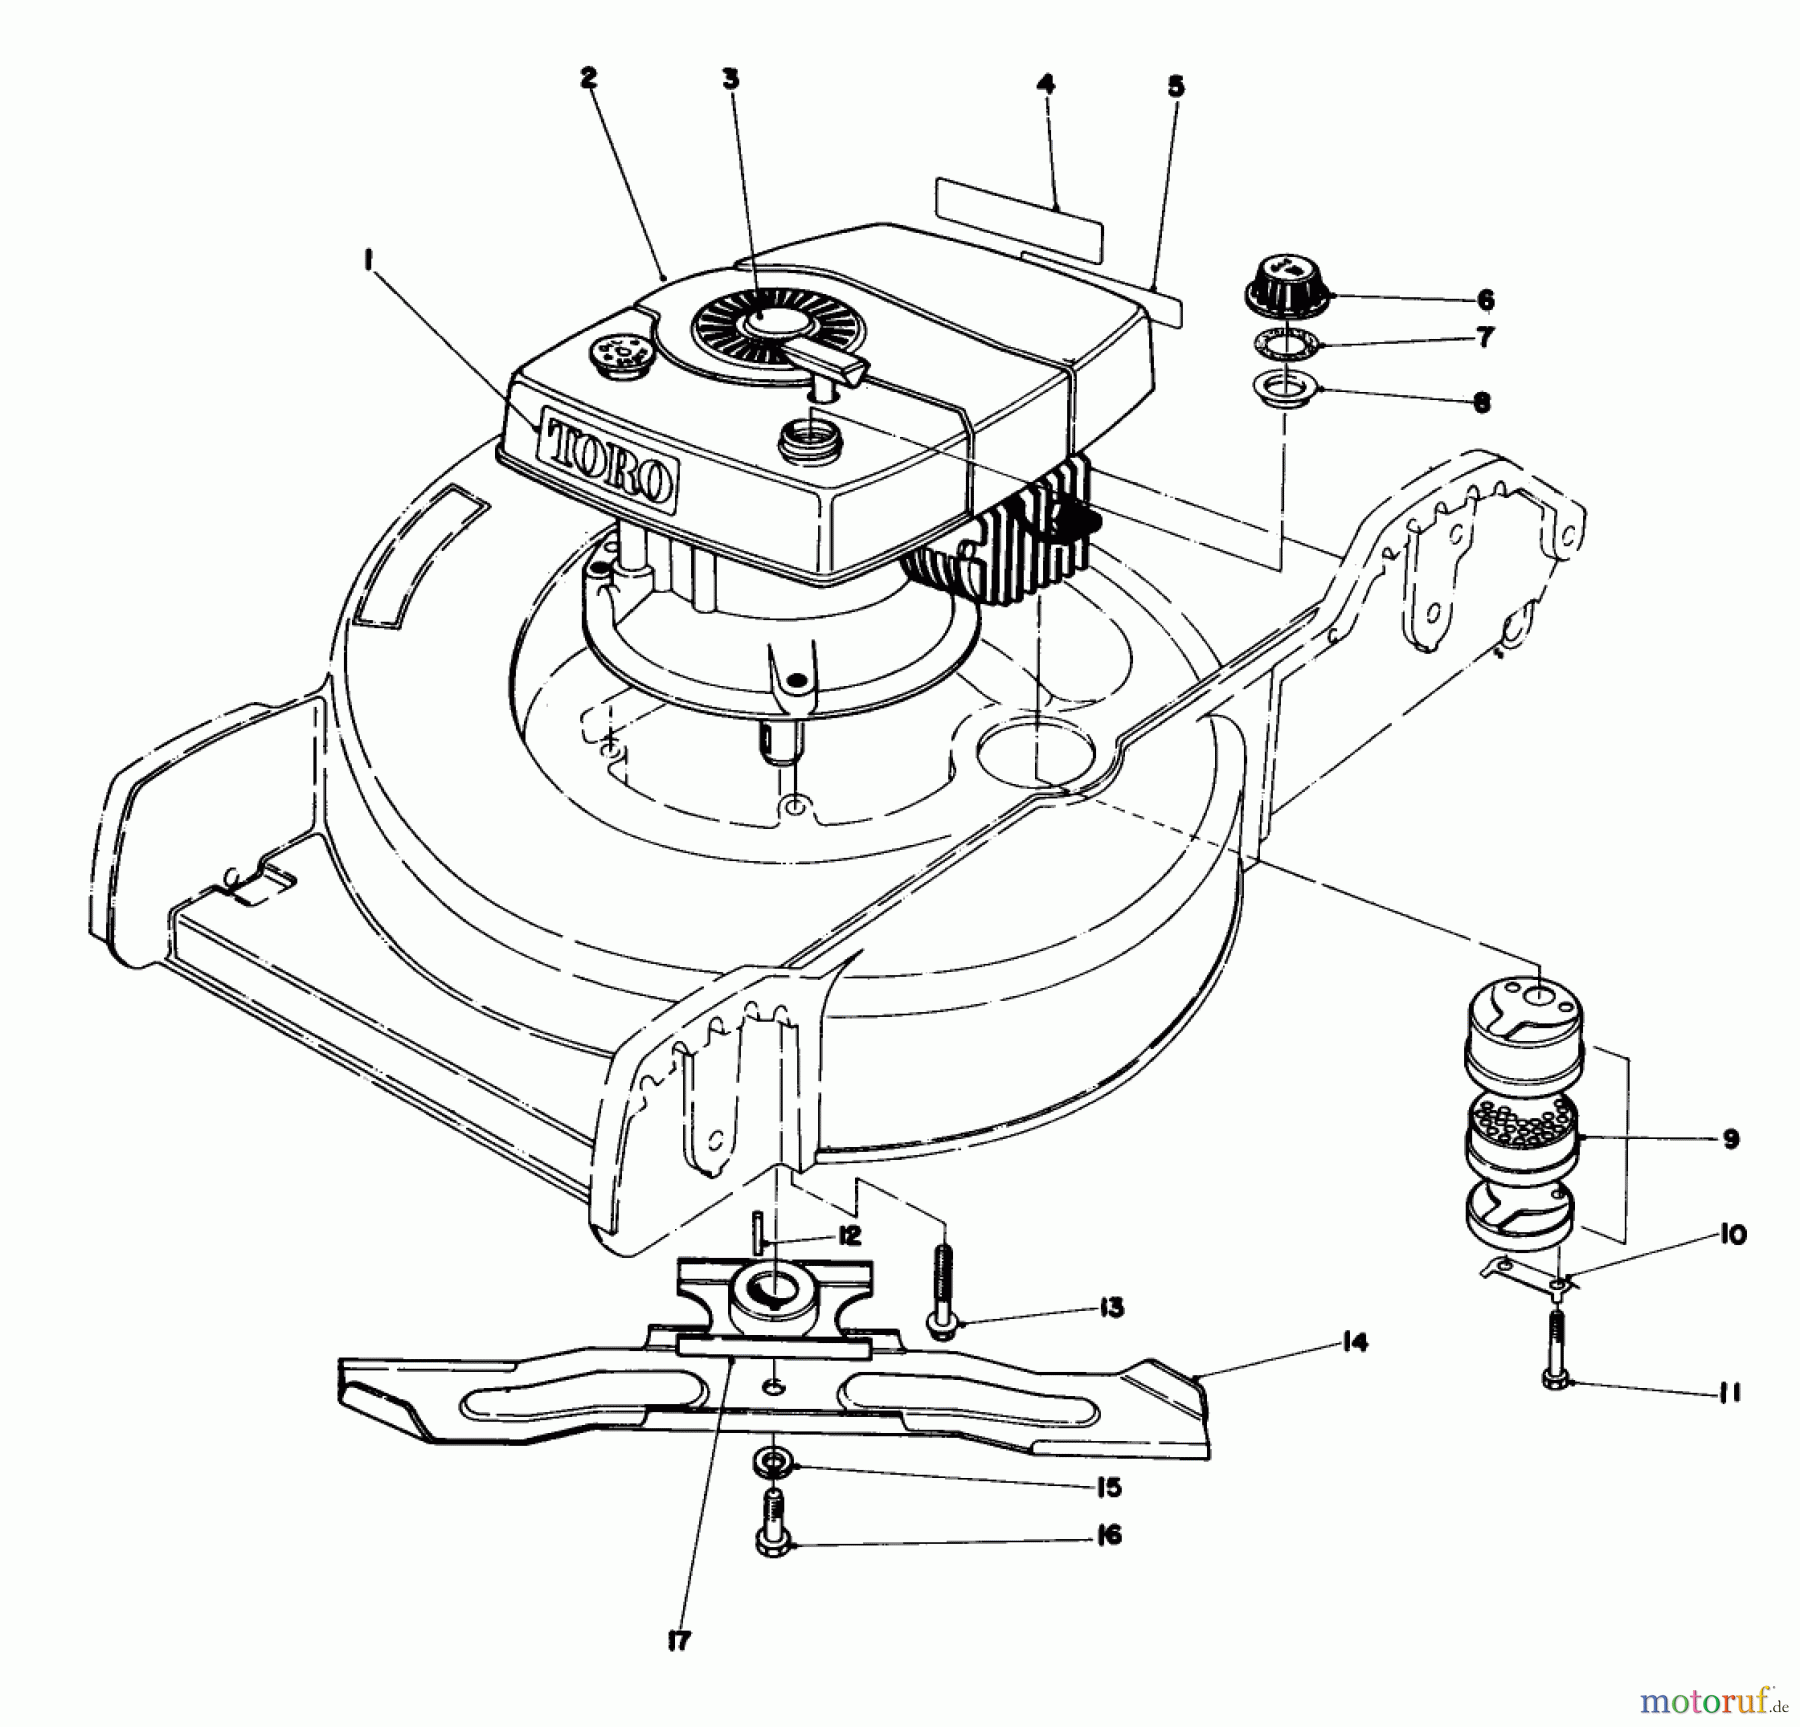  Toro Neu Mowers, Walk-Behind Seite 1 20762 - Toro Lawnmower, 1981 (1000001-1999999) ENGINE ASSEMBLY